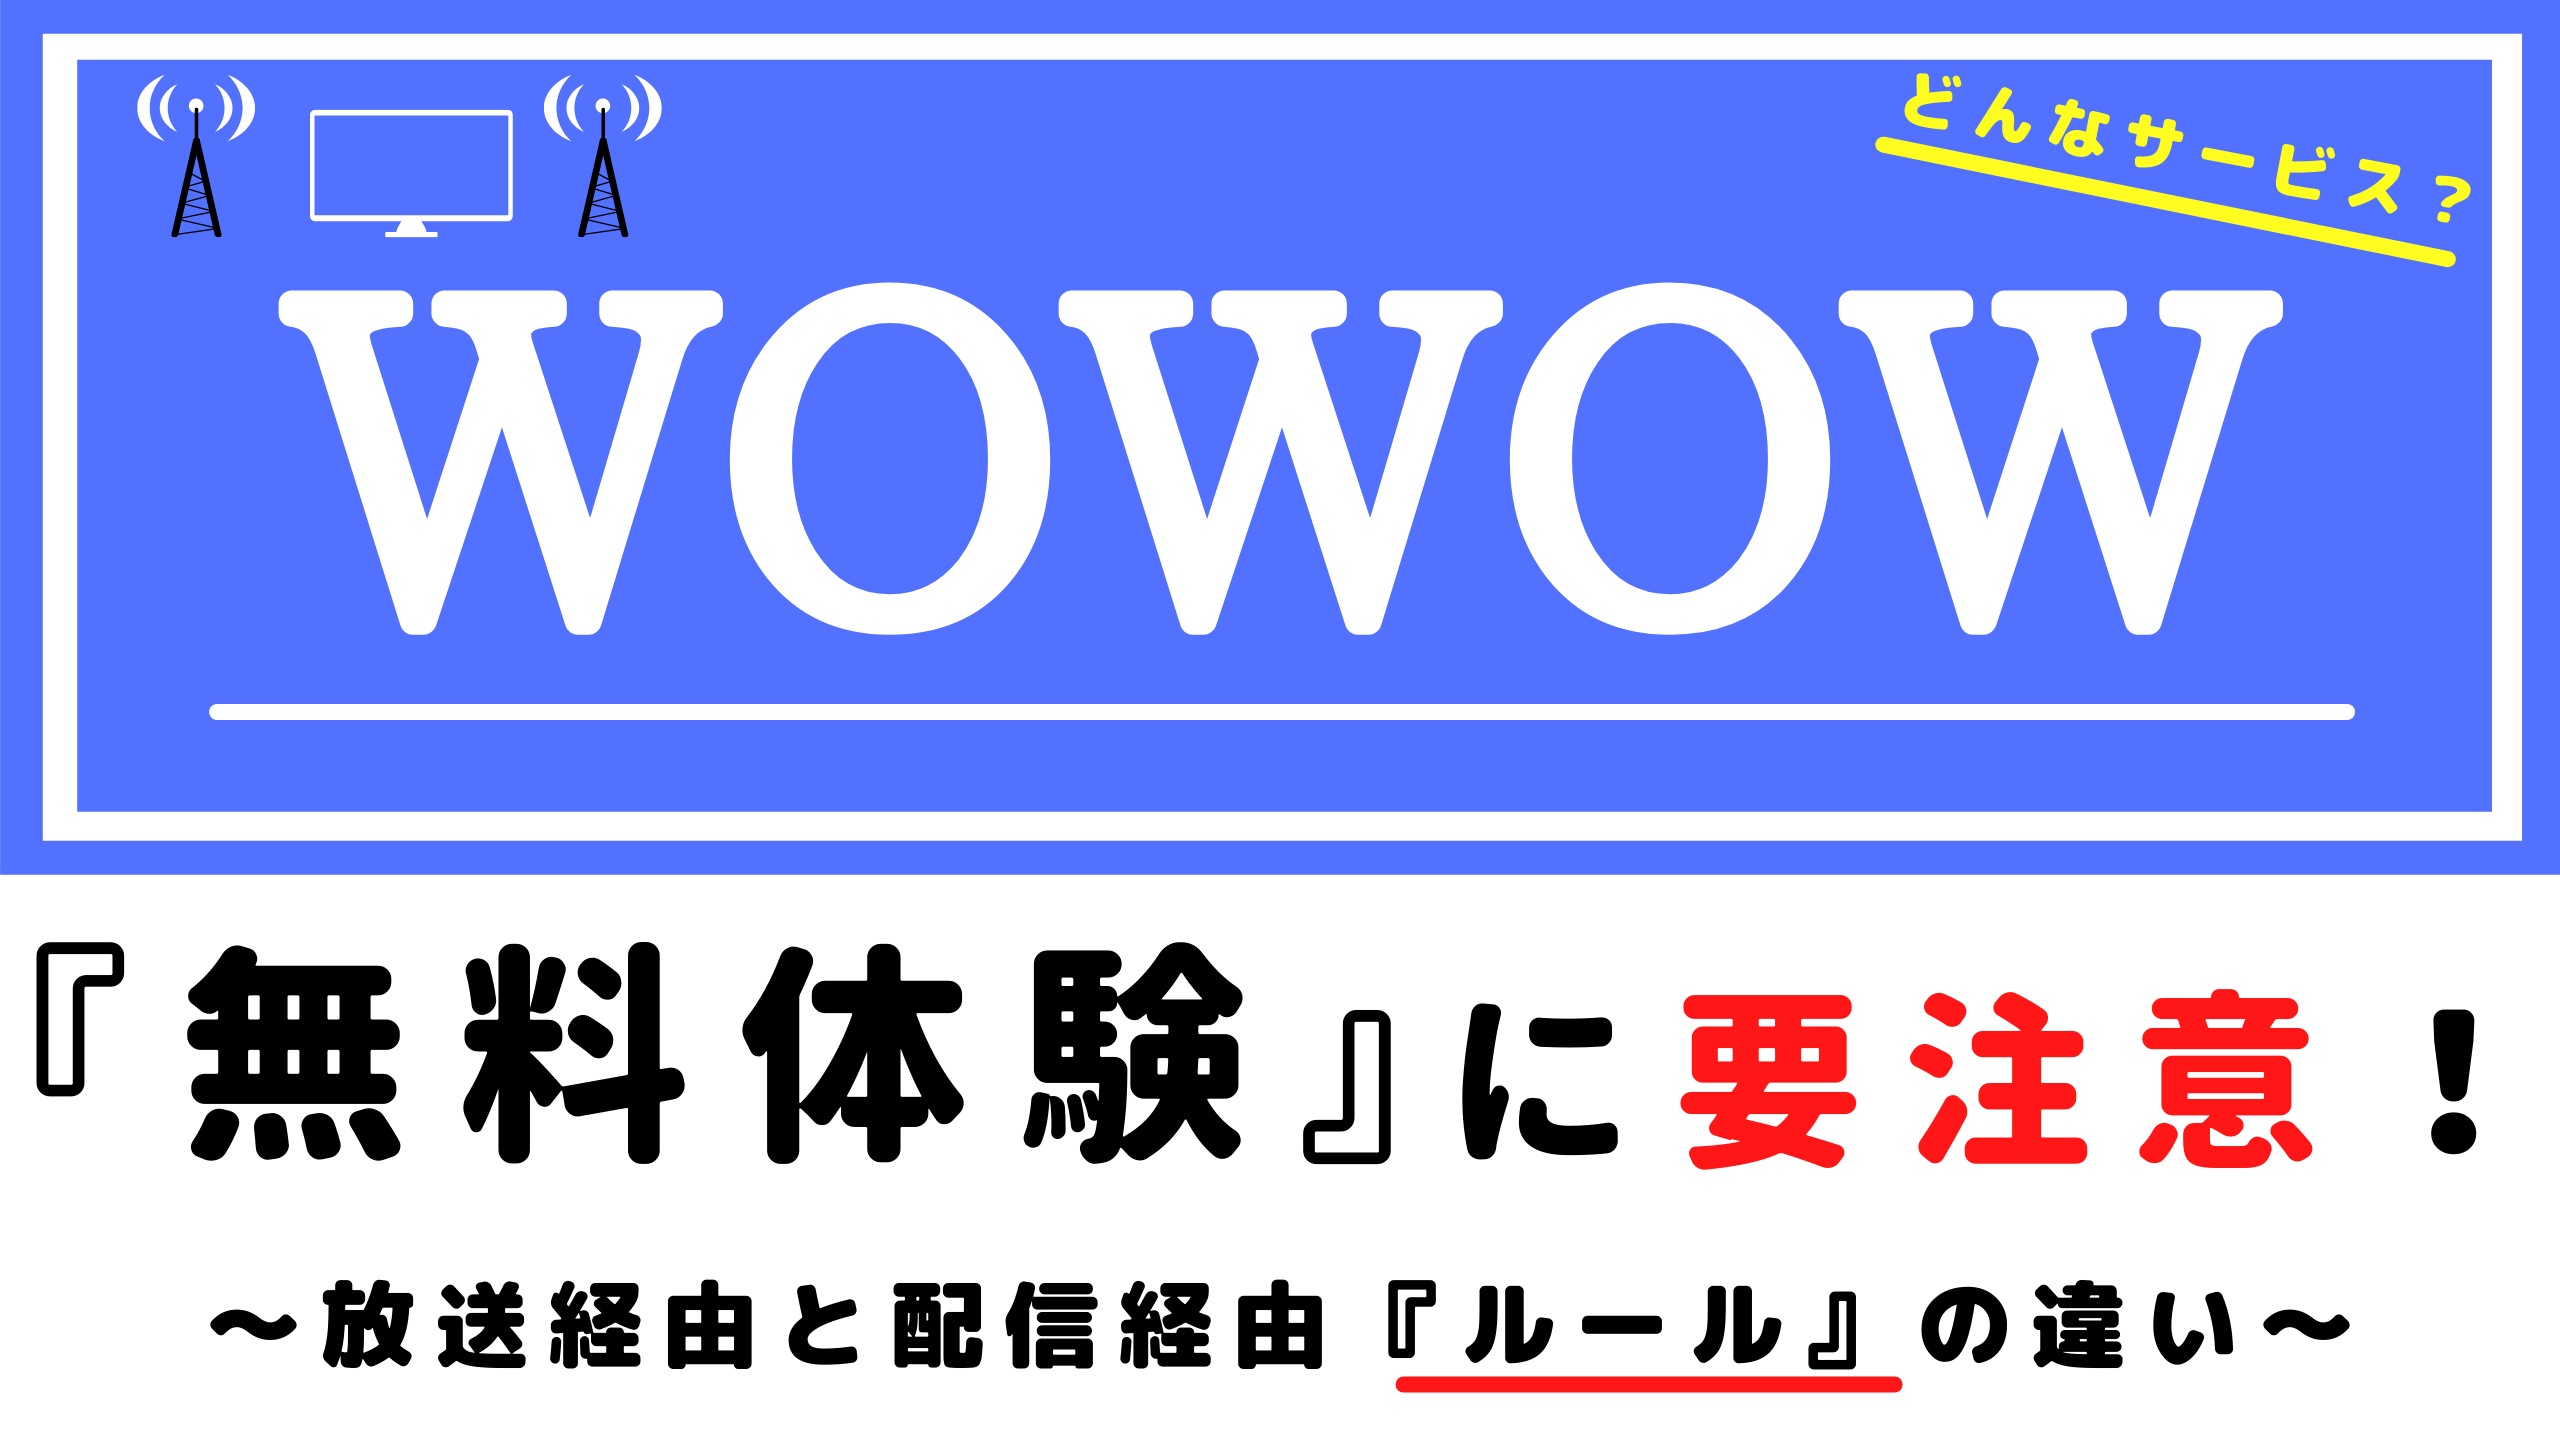 Wowowとは 解説動画集 ワウワウ オンデマンド 配信経由 と放送経由の大きな違いとは まさトピ